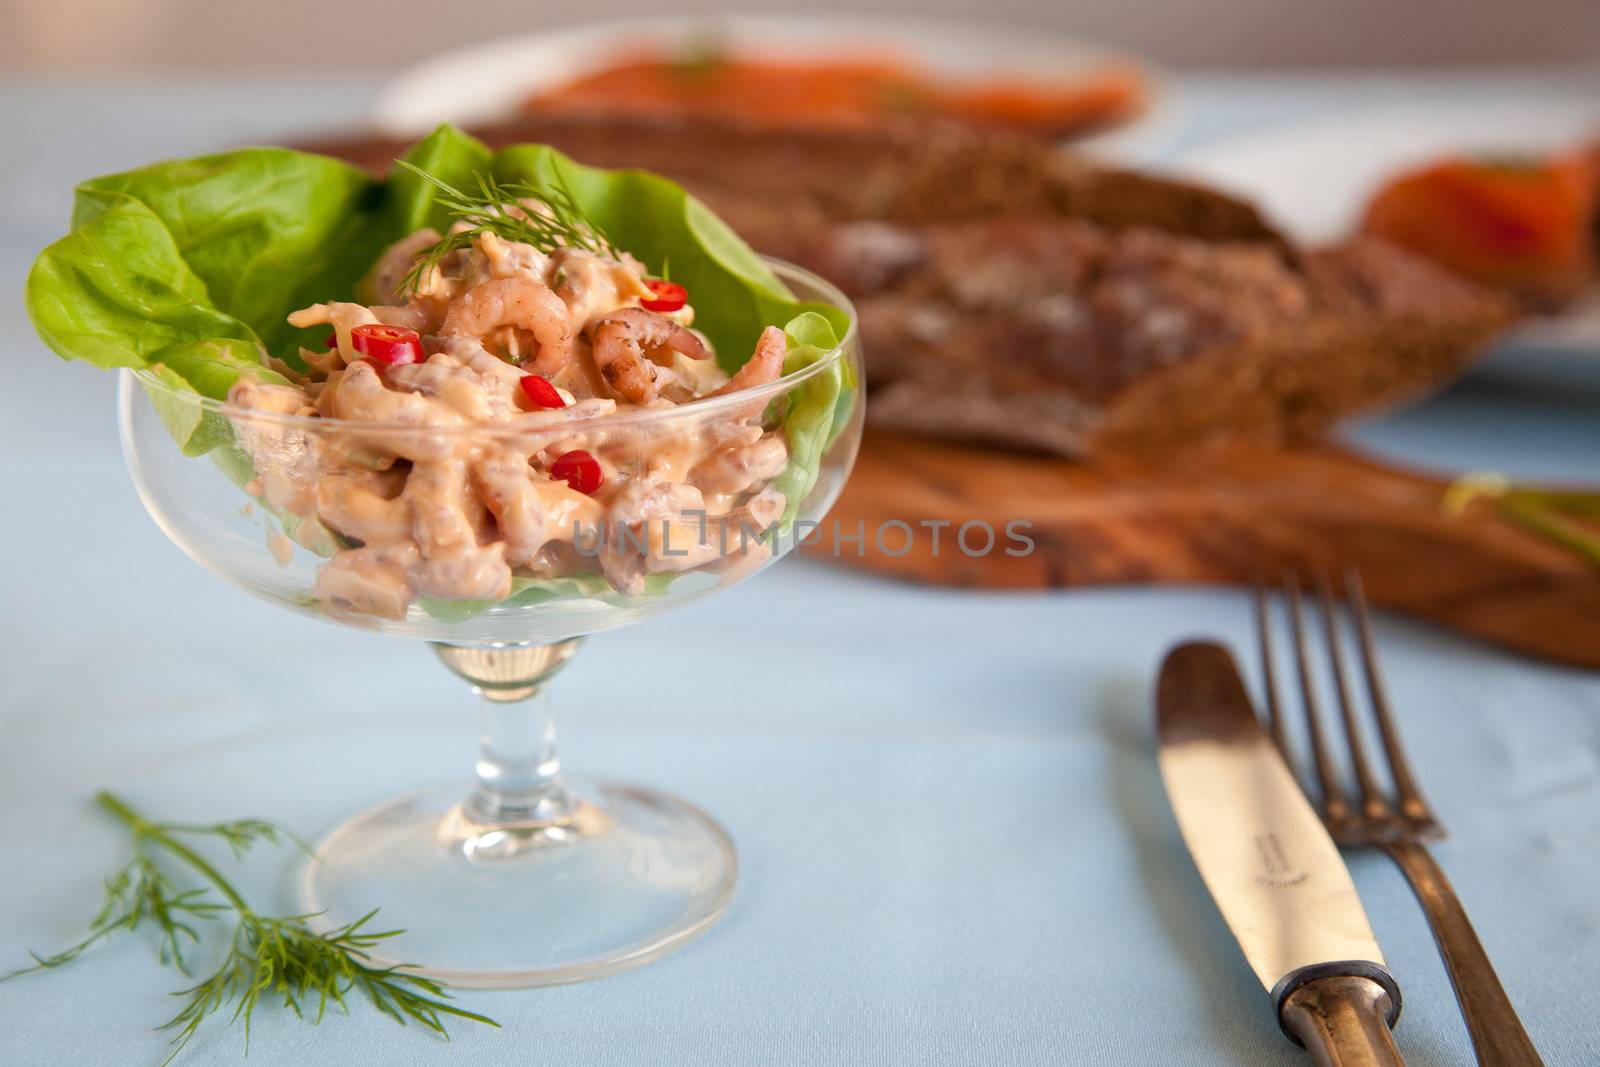 Shrimp salad by Fotosmurf